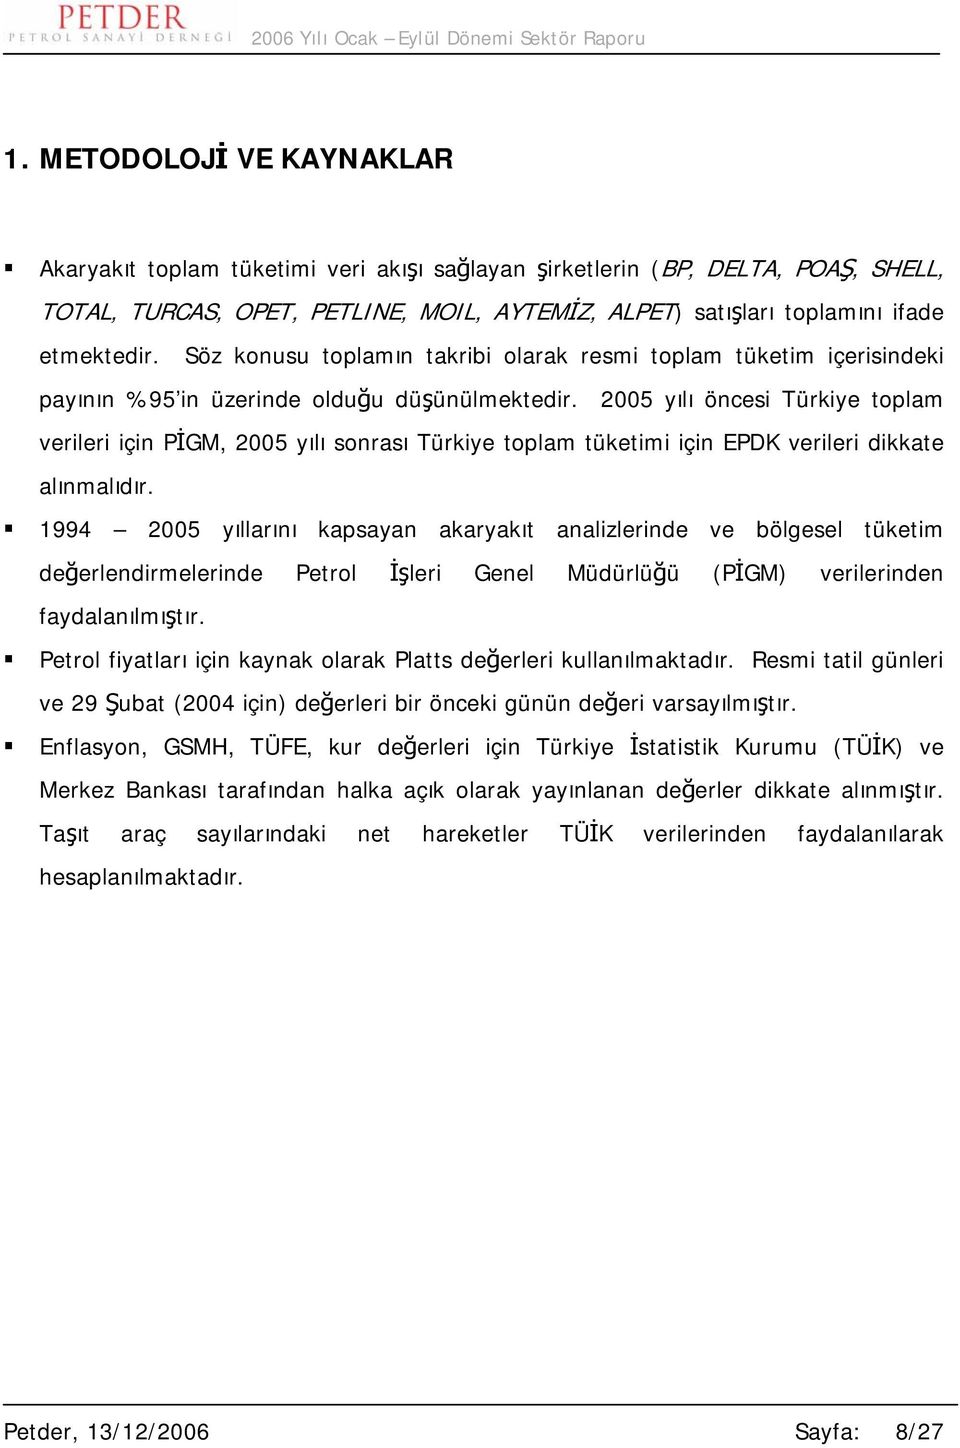 2005 yılı öncesi Türkiye toplam verileri için PİGM, 2005 yılı sonrası Türkiye toplam tüketimi için EPDK verileri dikkate alınmalıdır.